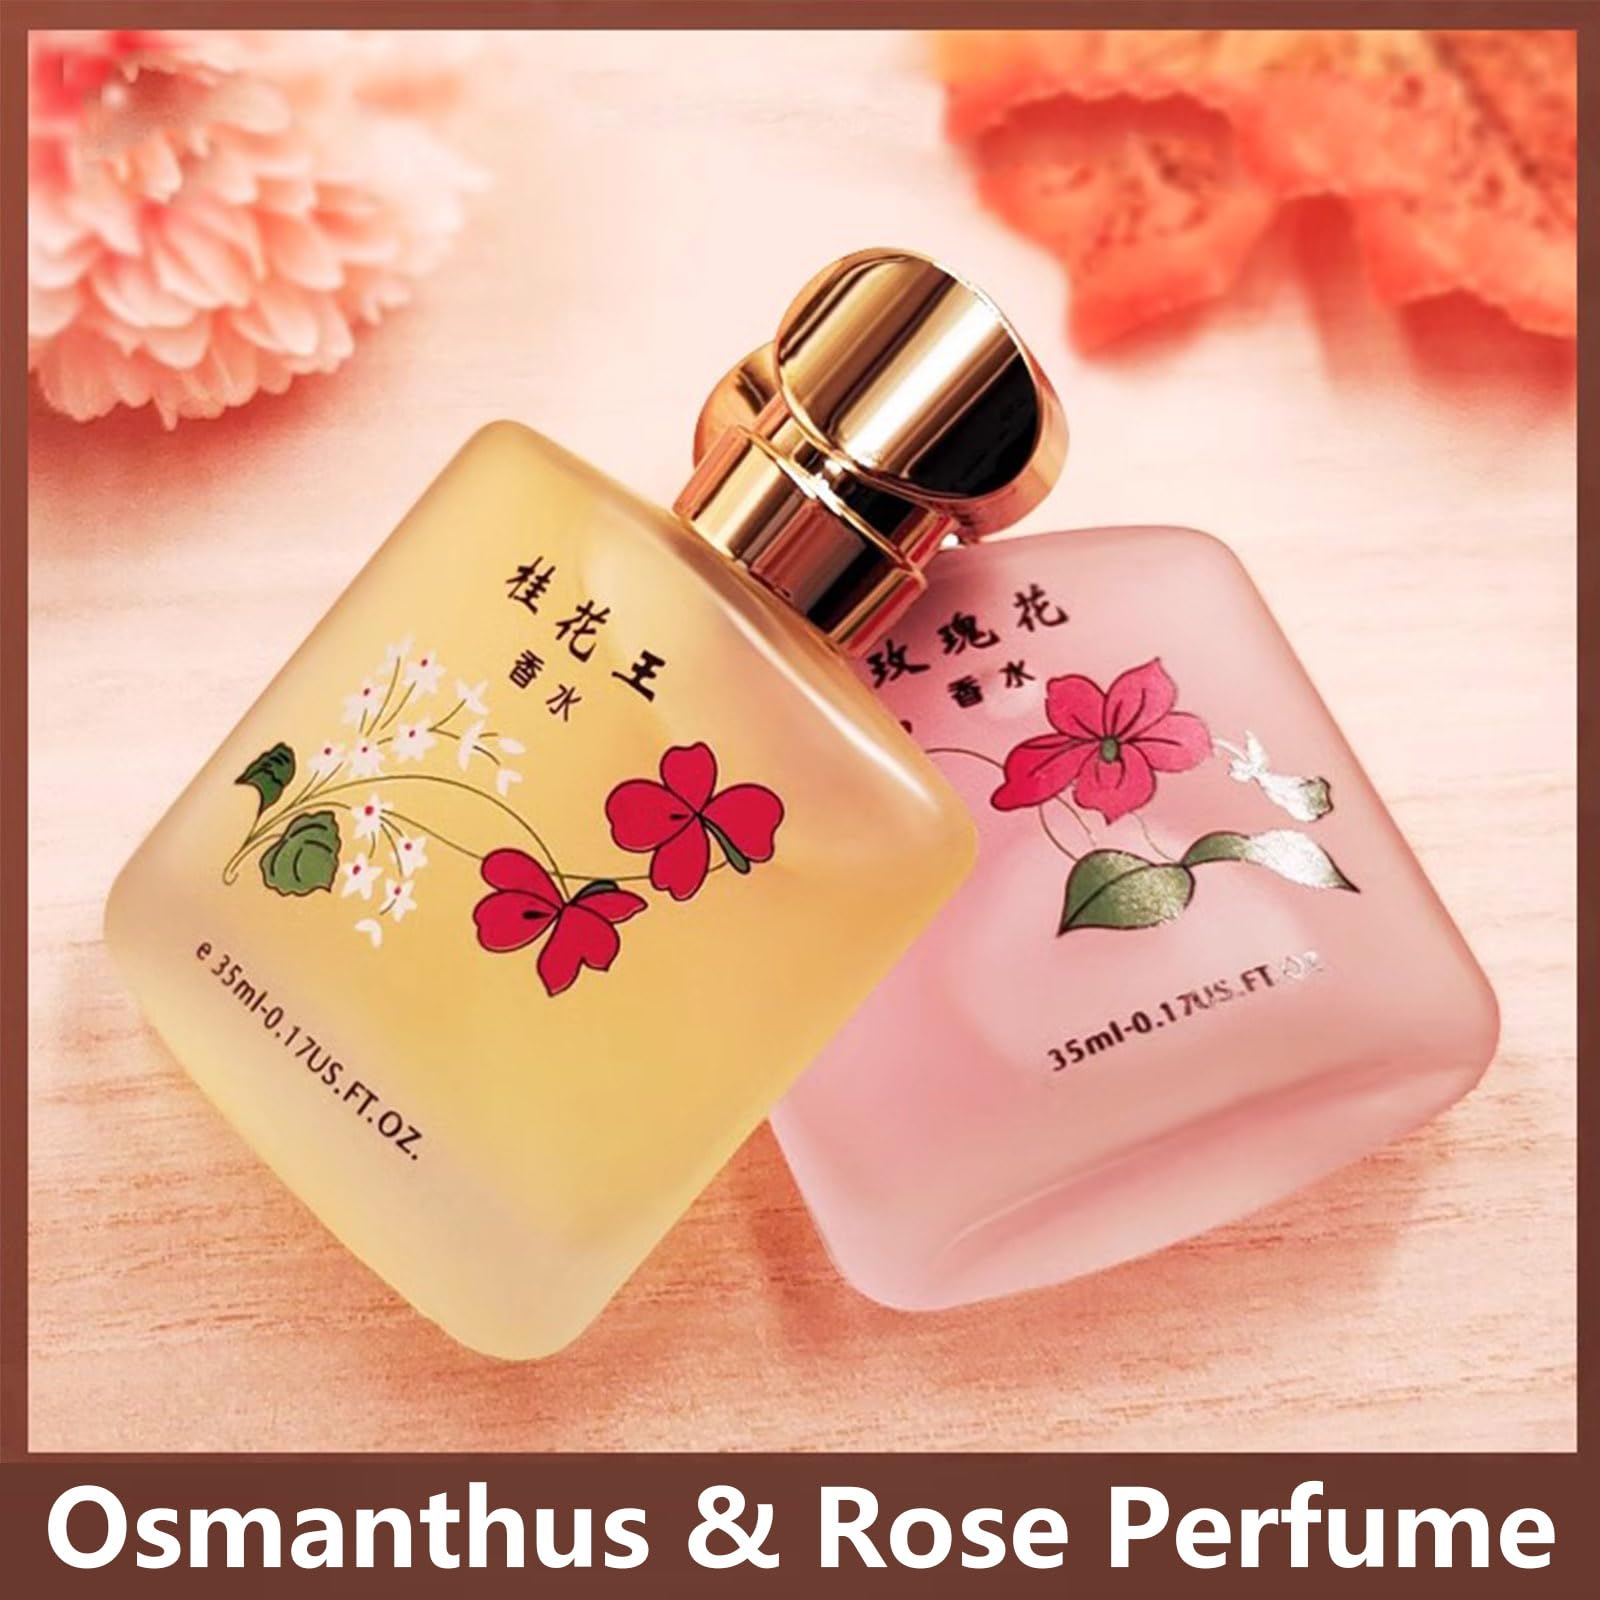 Grospe Osmanthus Perfume Women Eau de Parfum, Osmanthus Blossom for Women Eau de Parfum Spray, Pure Osmanthus Extract for Restoring Osmanthus Flavor, 1.25 fl.oz./ 35ml (Osmanthus)